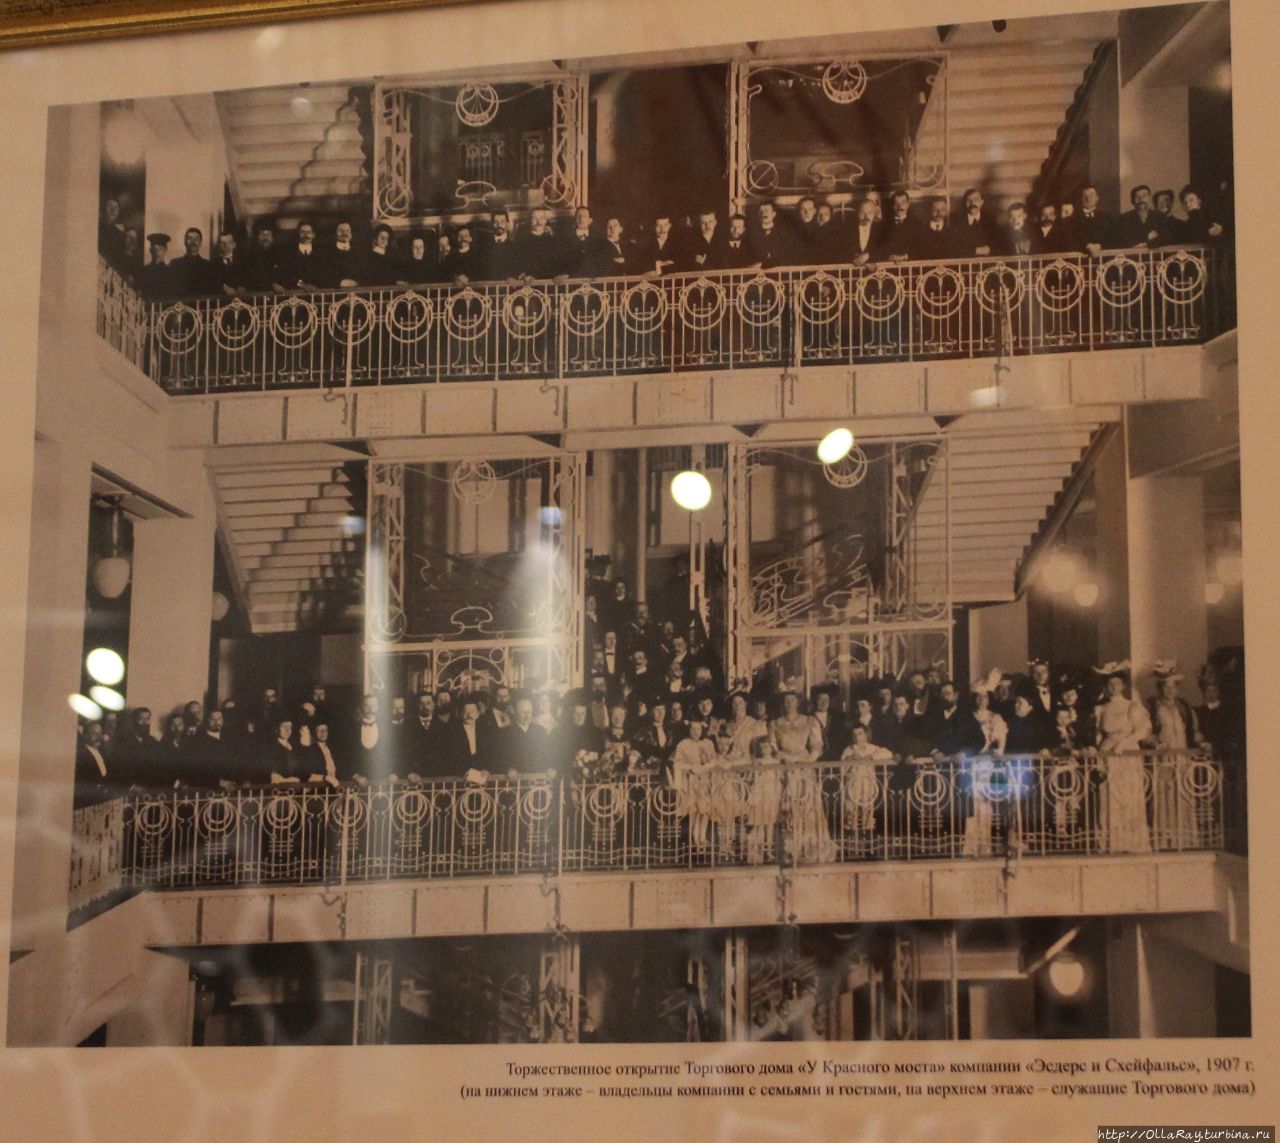 А вот так выглядело торжественное открытие в 1907 году. На нижнем этаже — владельцы с семьями и гостями,а на верхнем — служащие. Санкт-Петербург, Россия